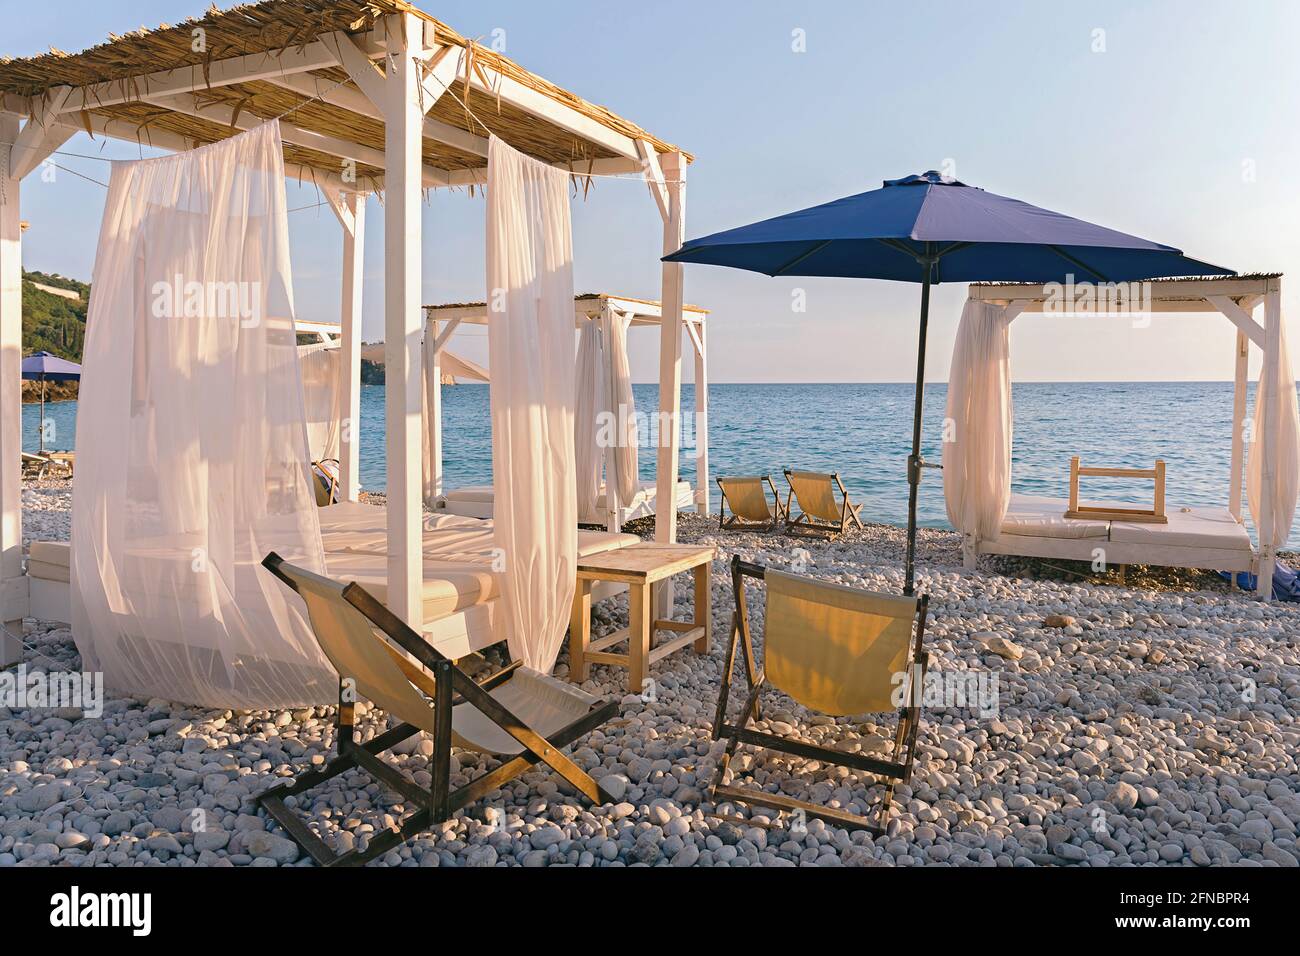 De magnifiques canopies ou baldachine sur la plage au coucher du soleil. Concept de vacances et de détente. Banque D'Images